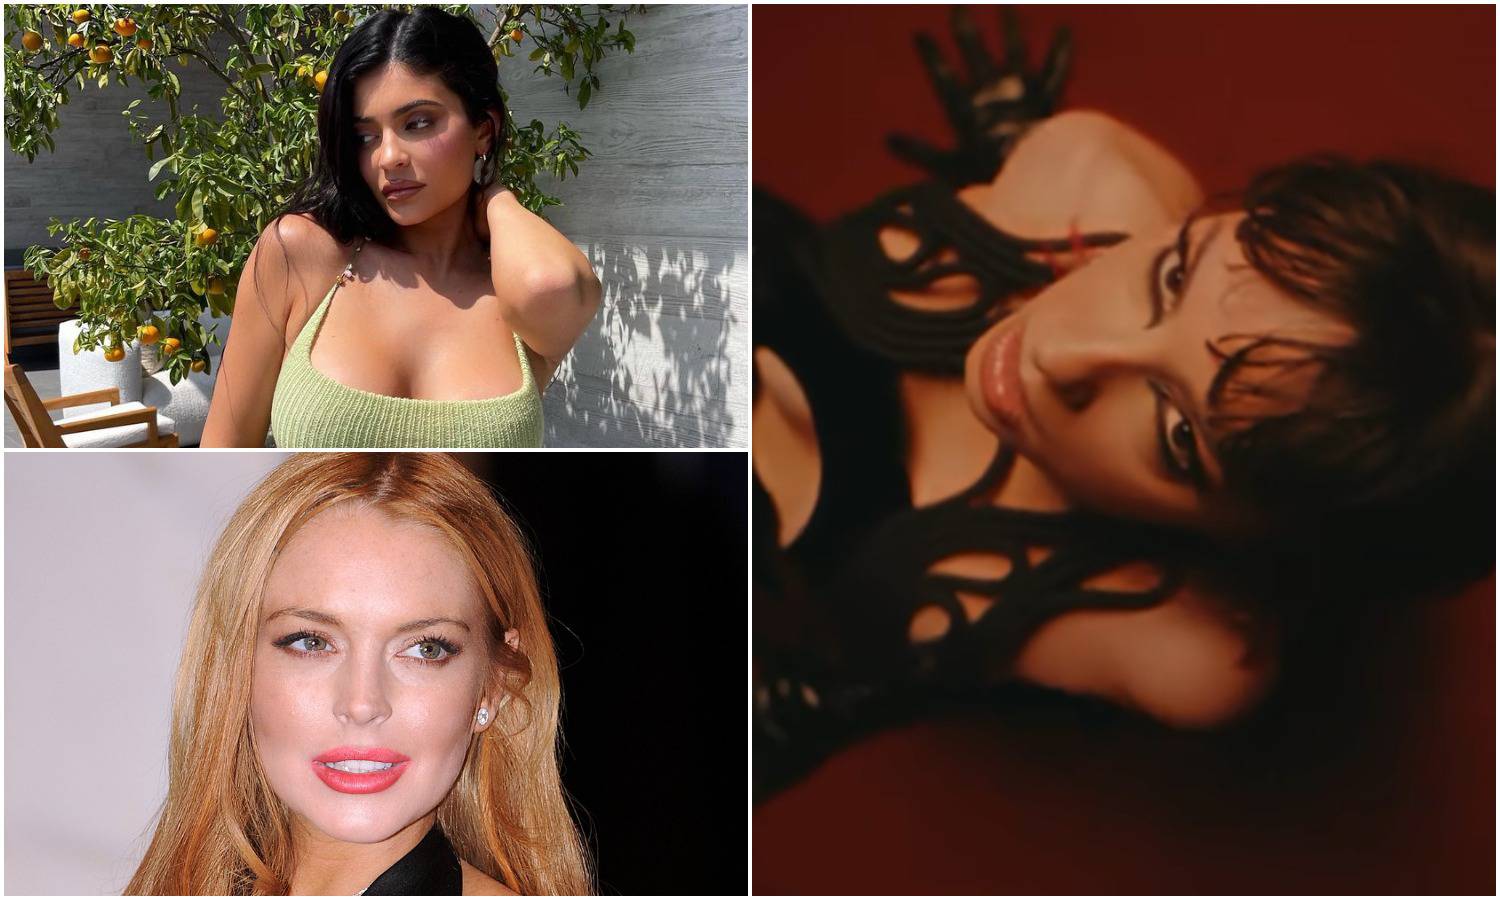 Prozvali je za kopiranje: Prije Sare Jo u krvi su se 'kupale'  Lindsey Lohan i Kylie Jenner